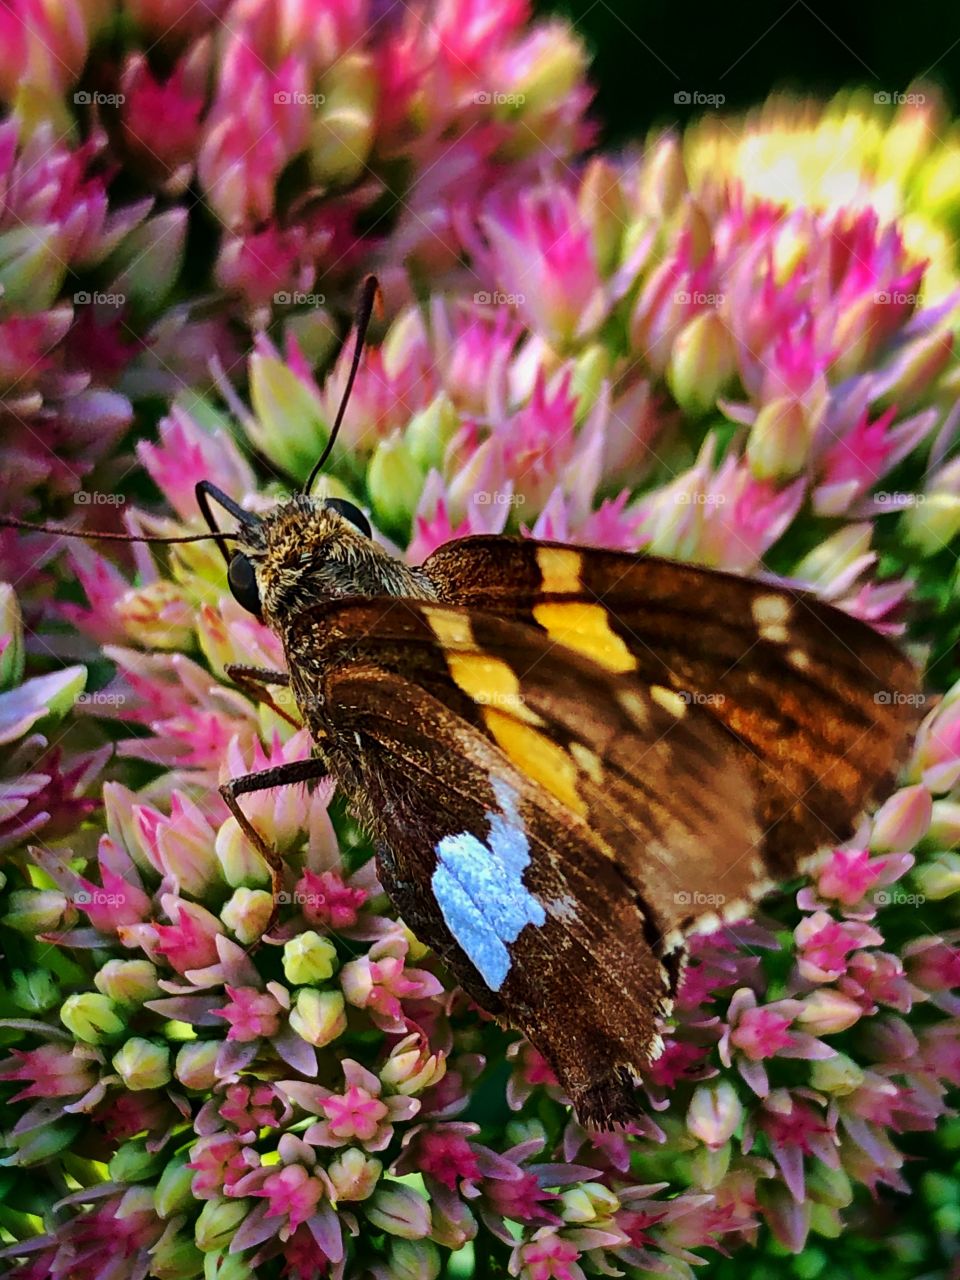 Butterfly sitting on sedum flower closeup 